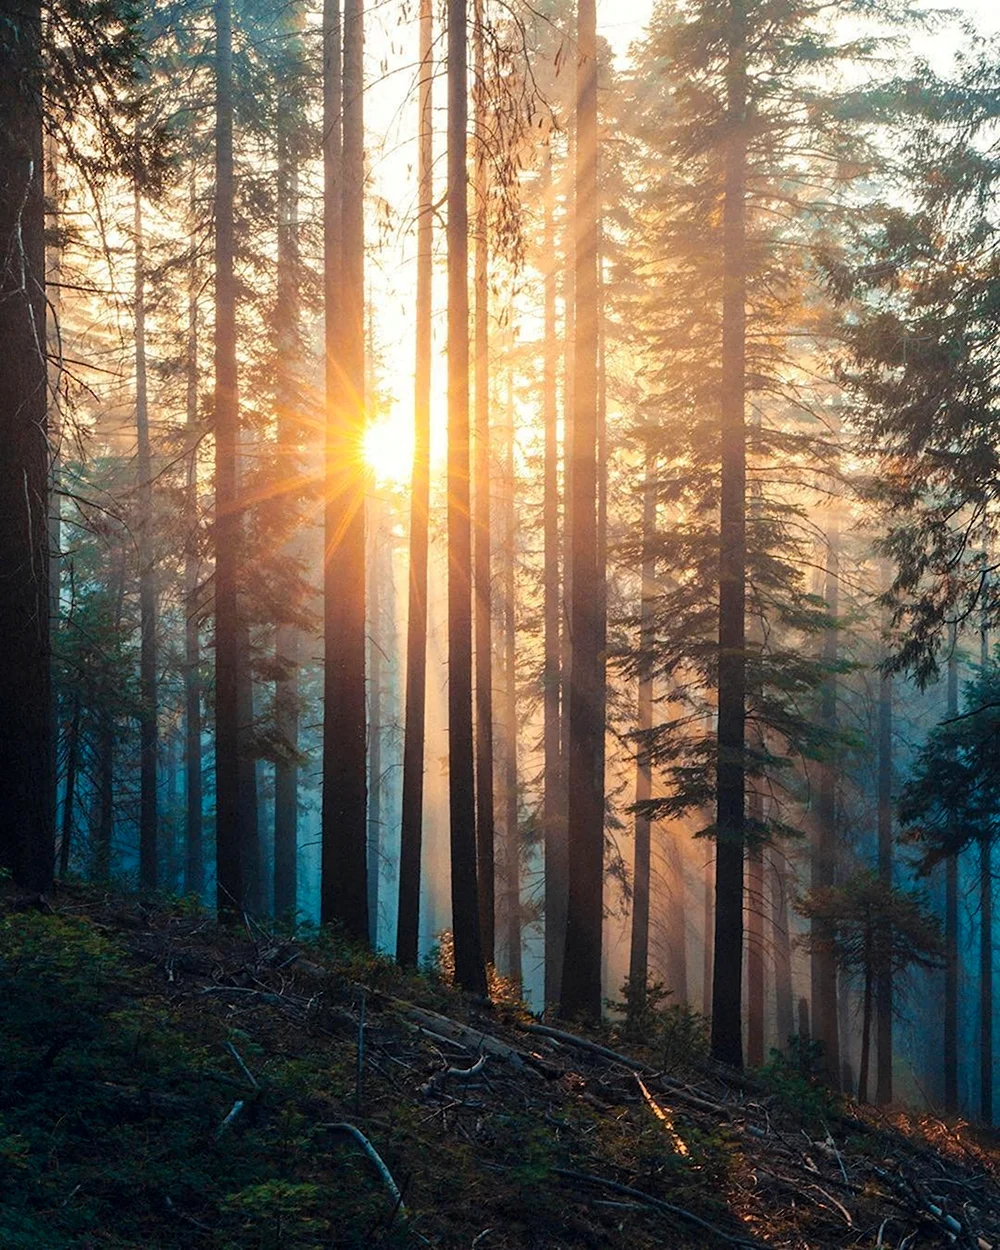 Рассвет в лесу